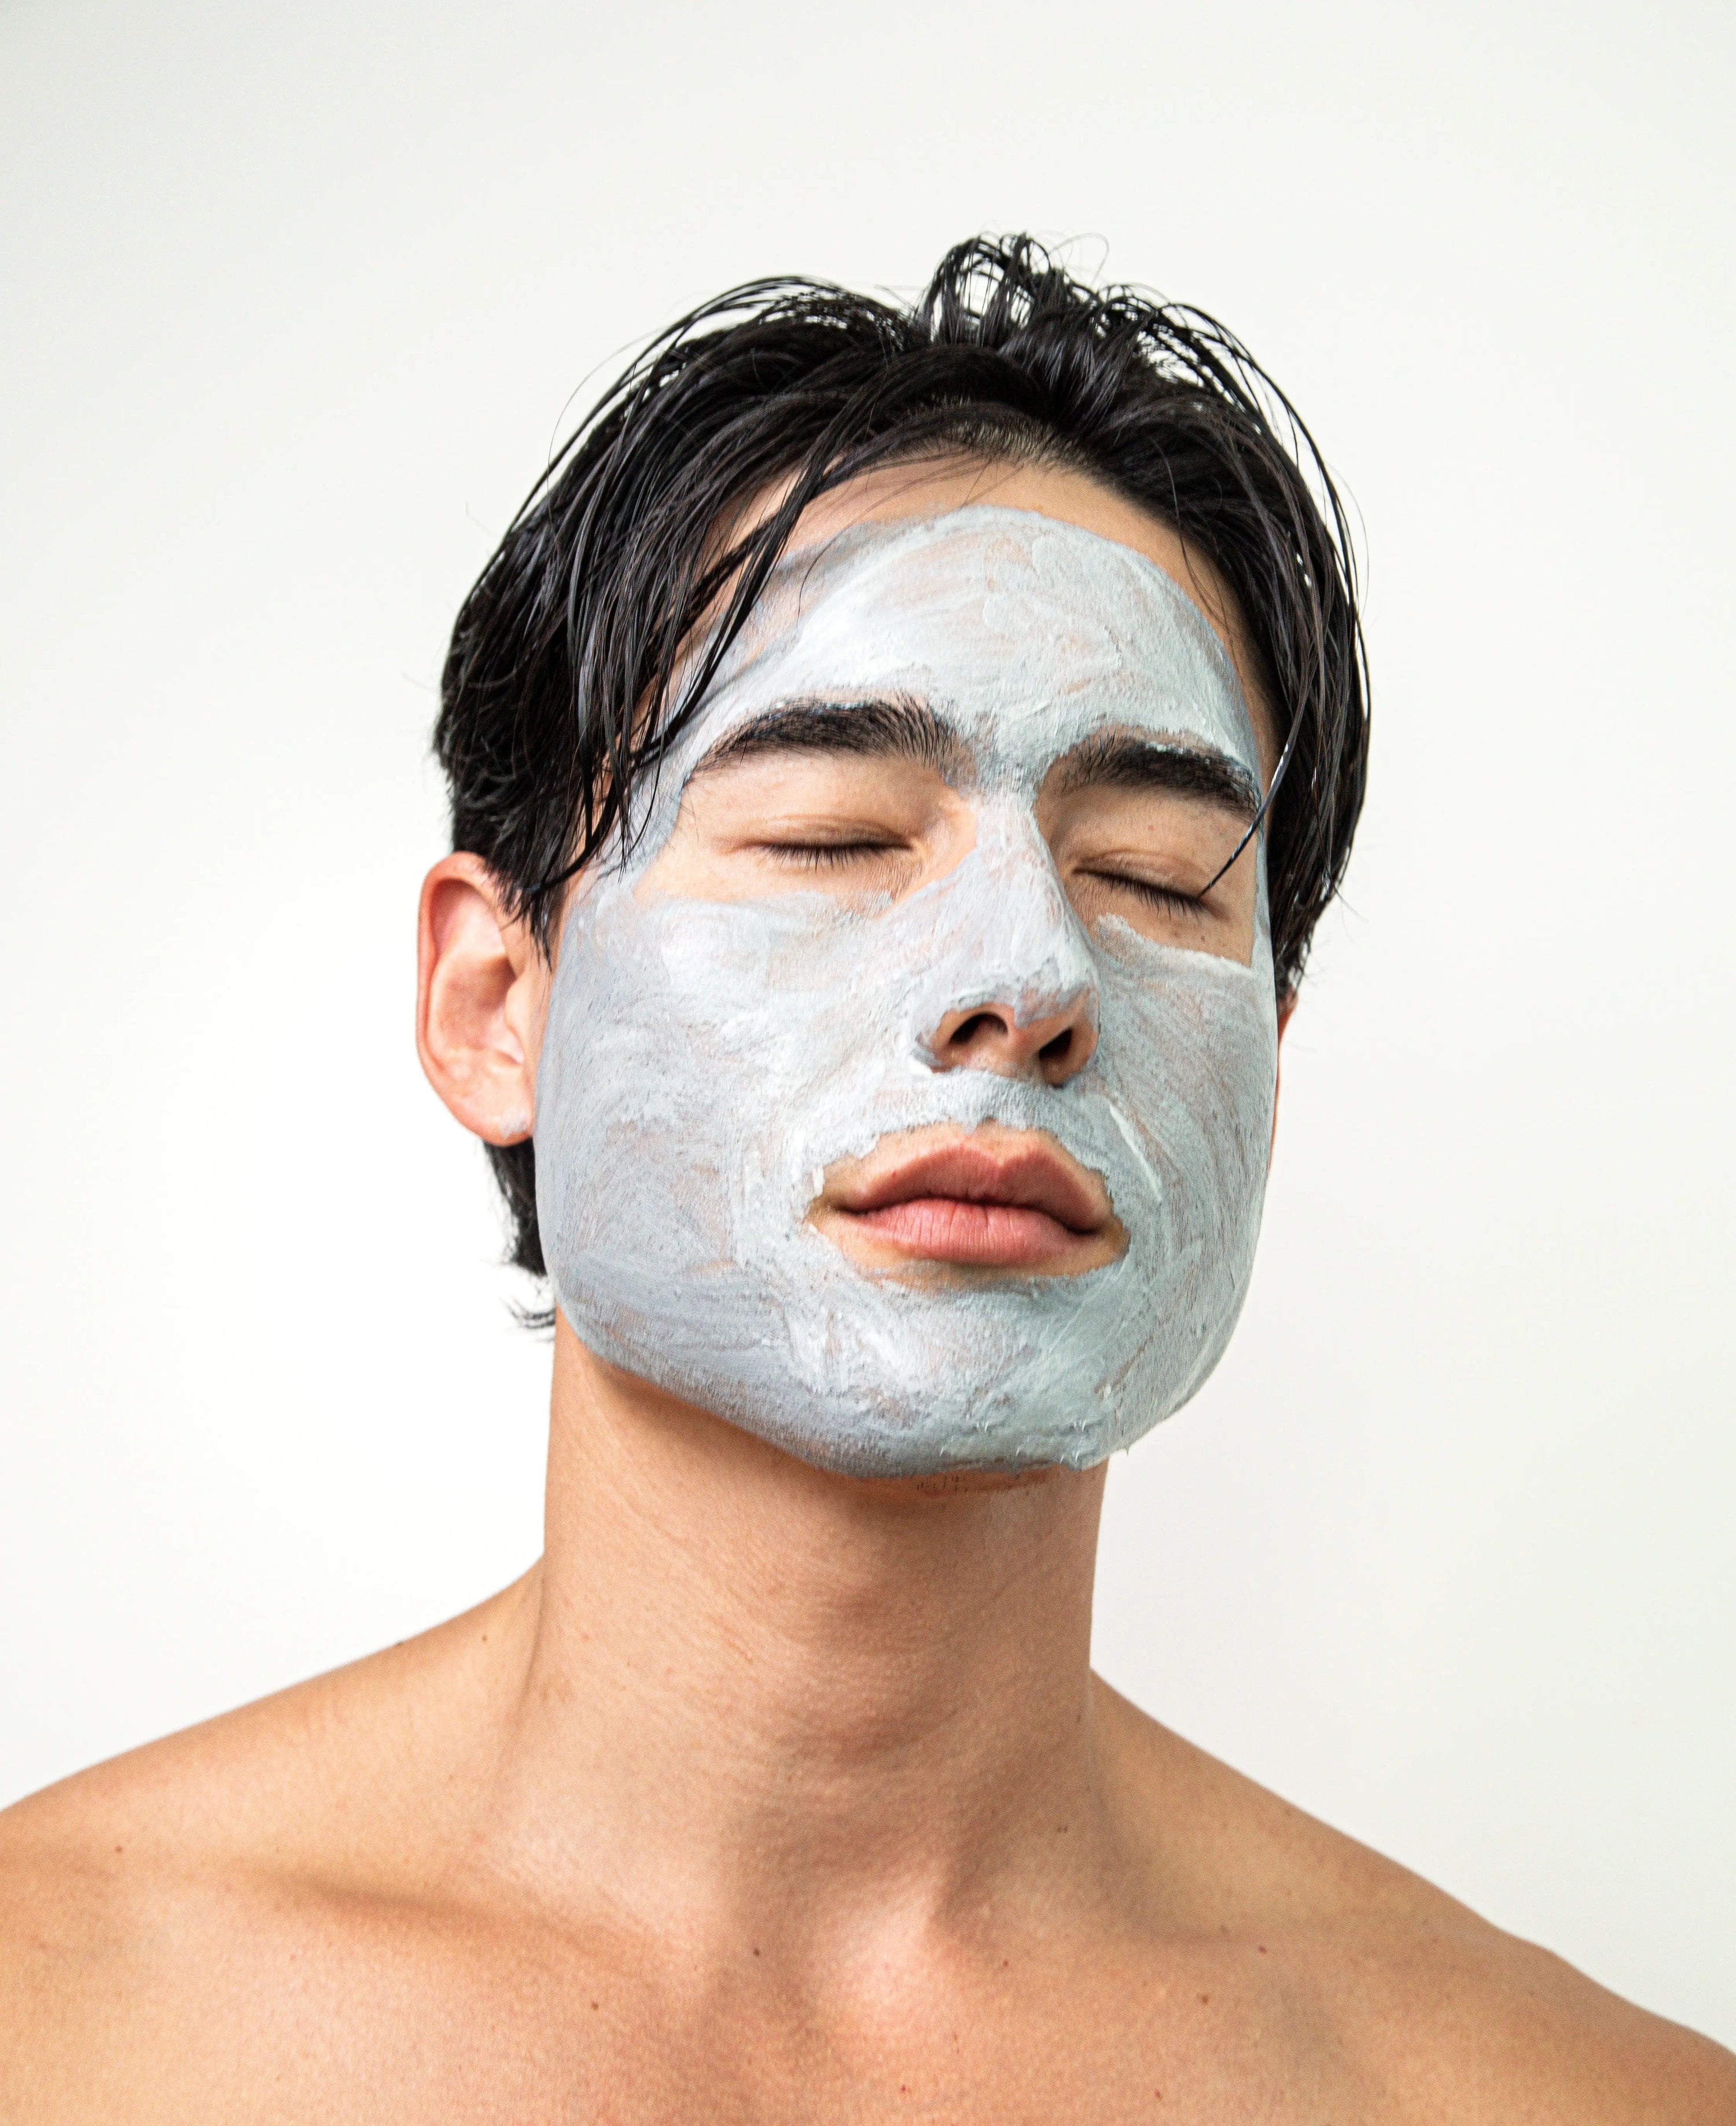 Ceramine Cosmética Coreana kaolin arcilla para la piel, poros y reducir grasa en uso en la cara